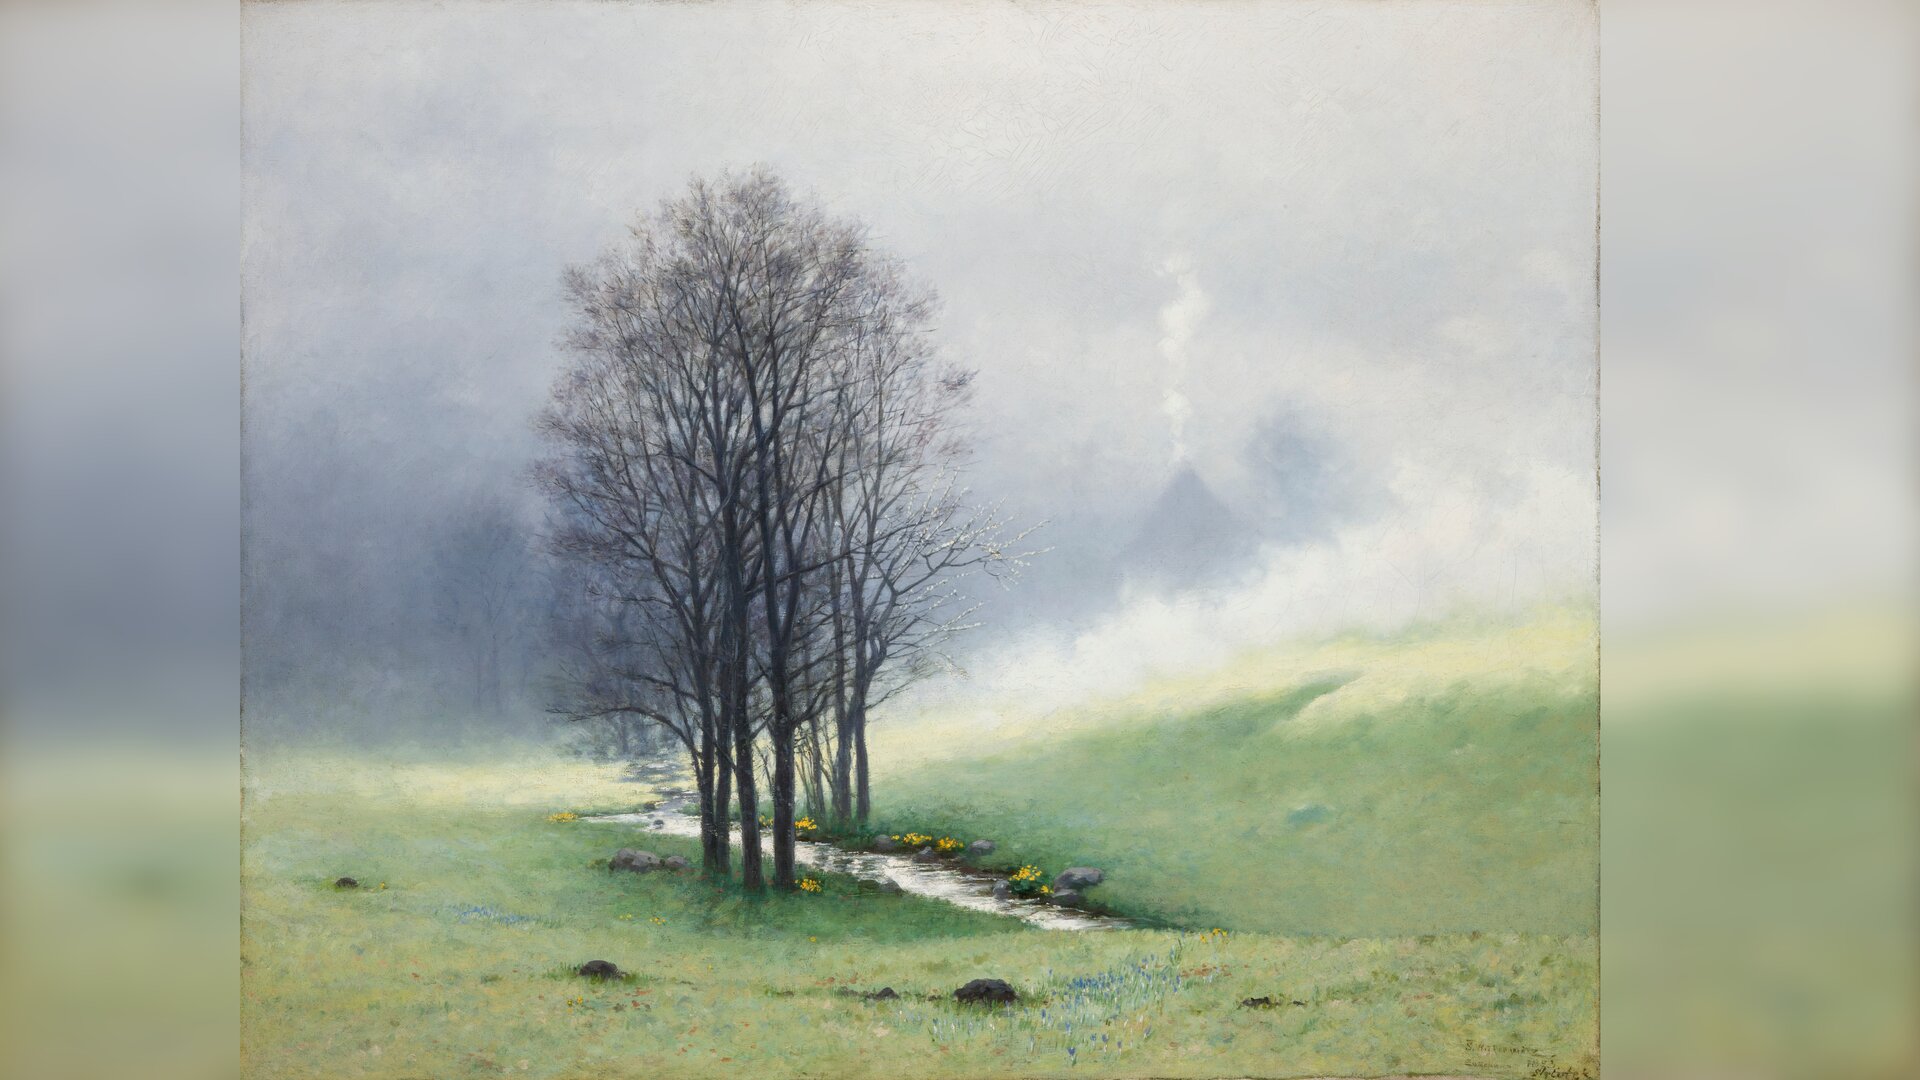 Ilustracja przedstawia pejzaż. Pośrodku łąki porośniętej młodą trawą ciągnie się wąski strumyk. Obok jego brzegów rosną nagie drzewa. W tle zachmurzone niebo i mgła.